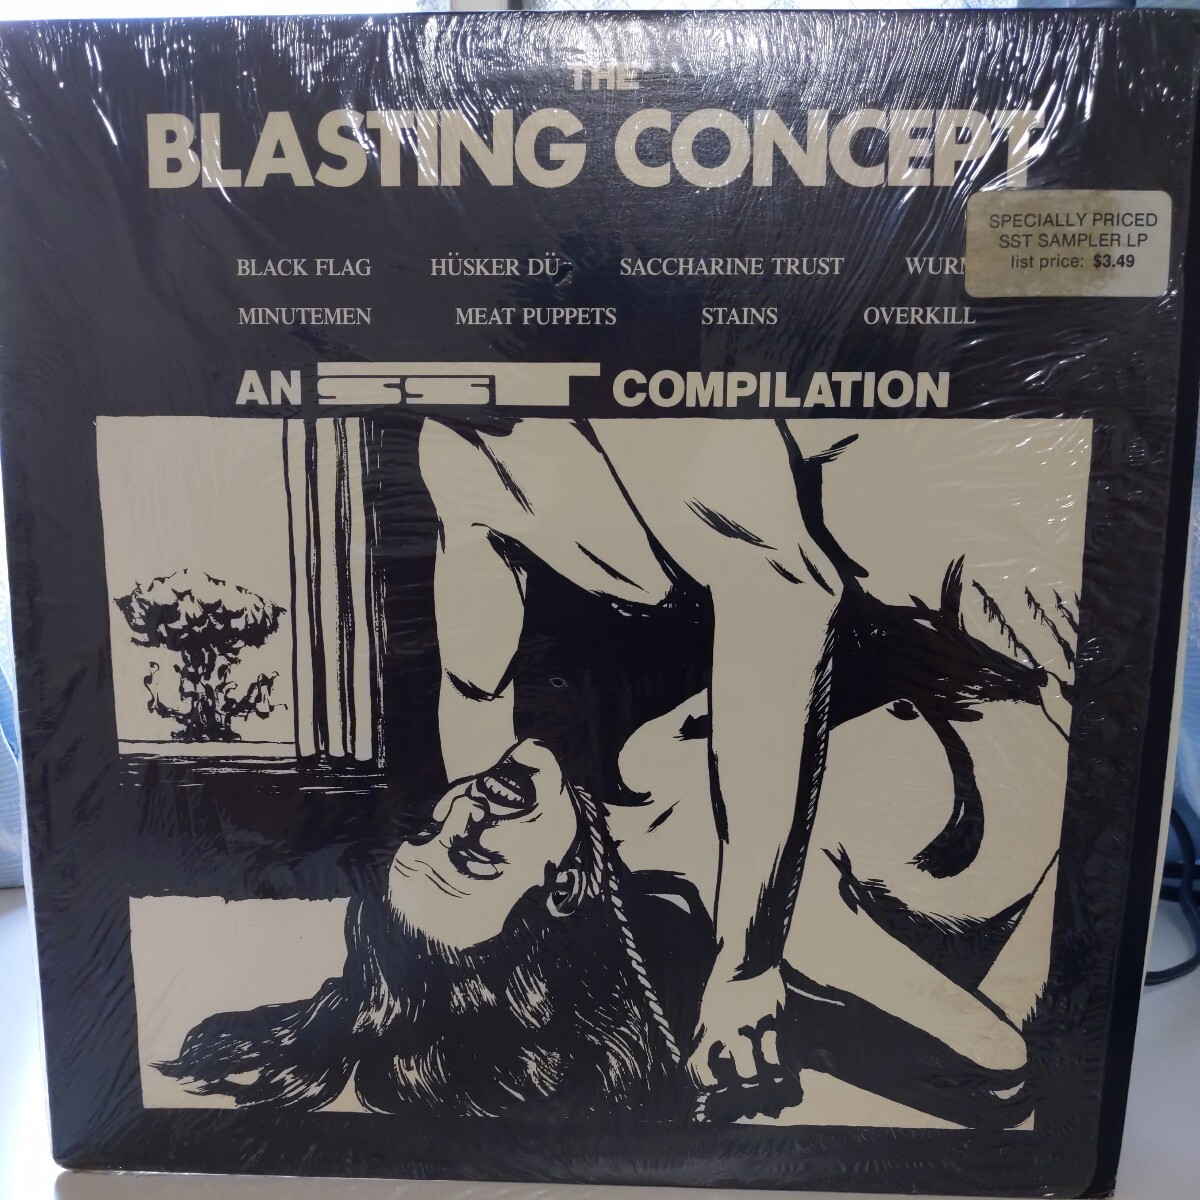 The Blasting Concept 中古レコード アナログ 12inc LPの画像1